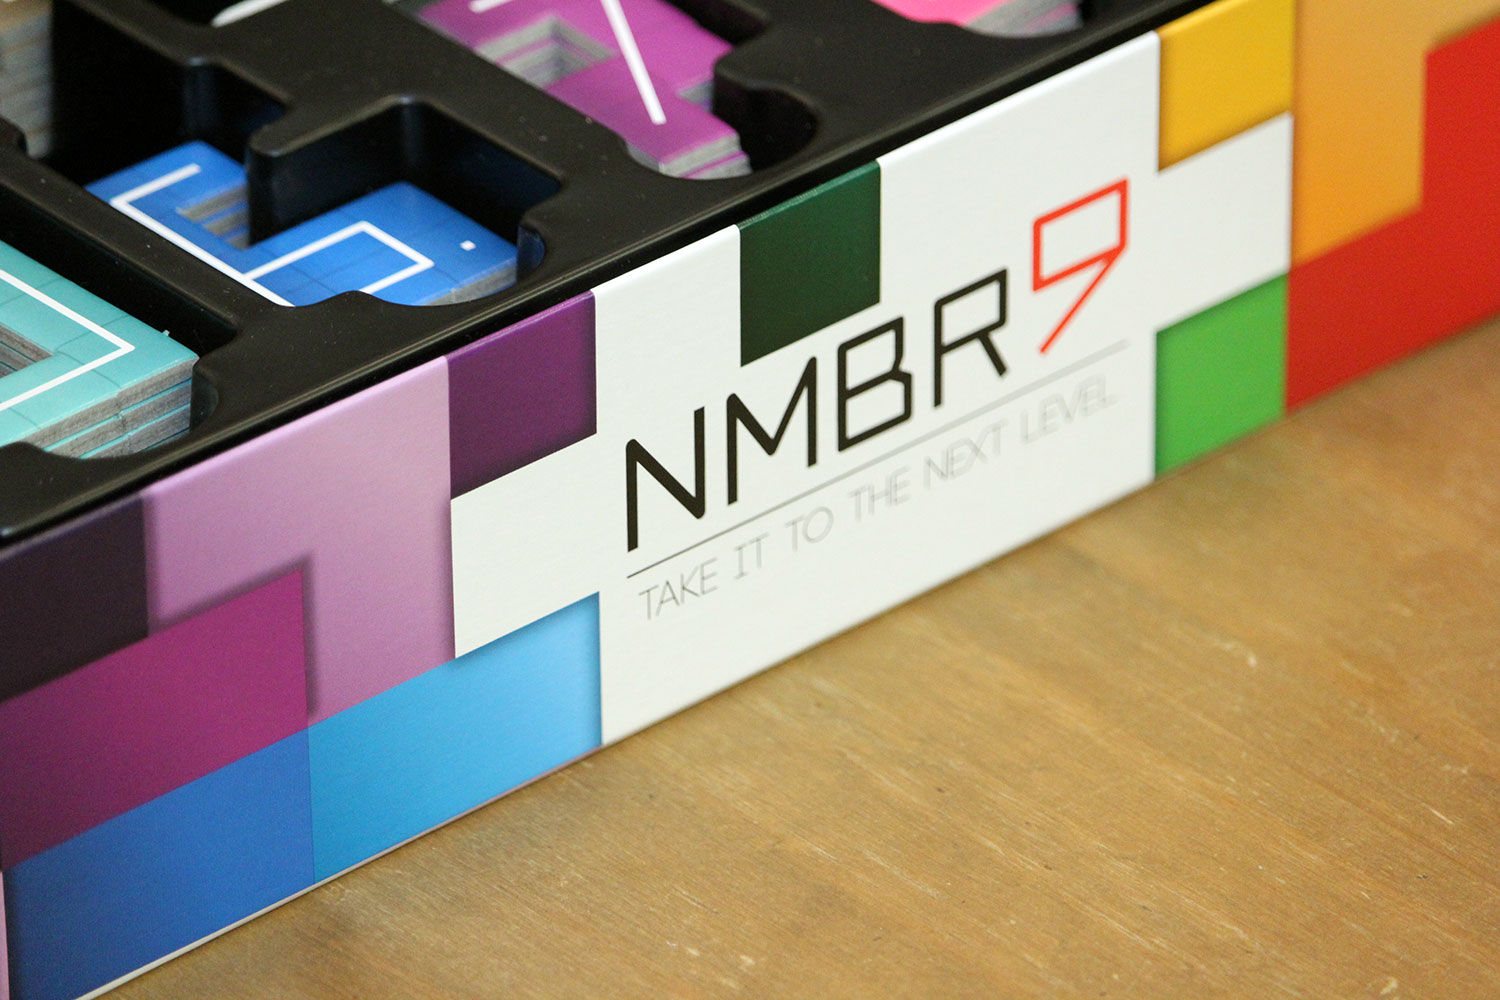 NMBR9 von Abacus Spiele im Test